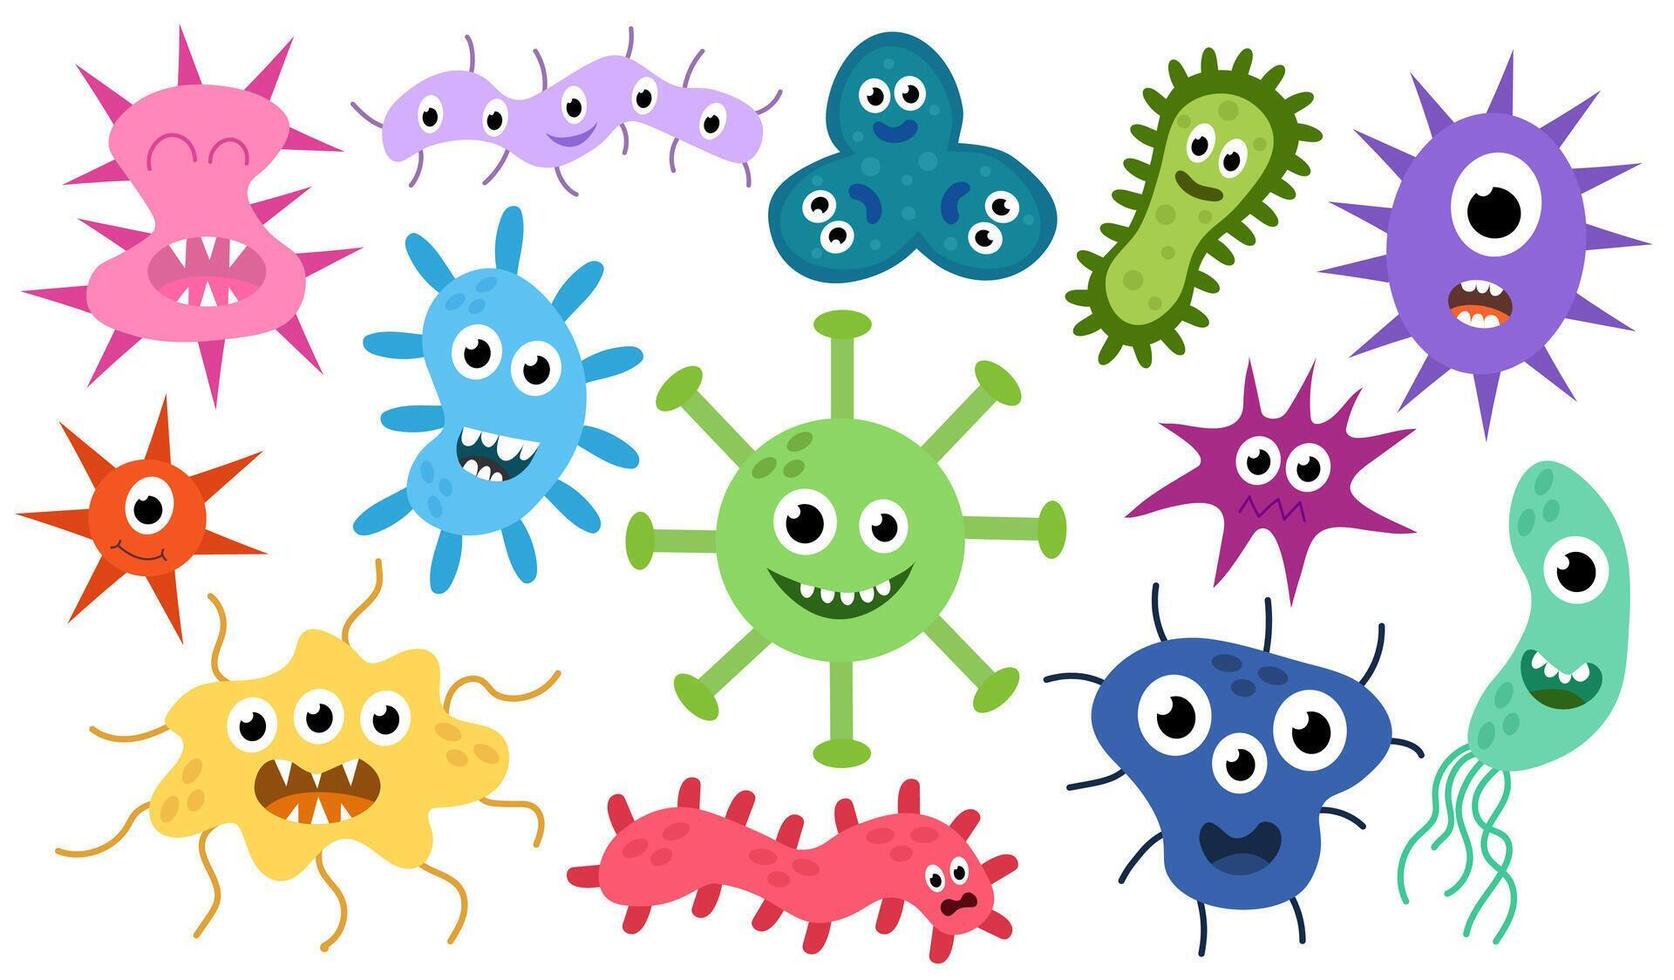 söt tecknad serie tecken virus, bakterie, mikrob, bakterier uppsättning. mikrobiologi organism av annorlunda typer av färgrik och former. maskotar uttrycker känslor. barn illustration i platt design. vektor